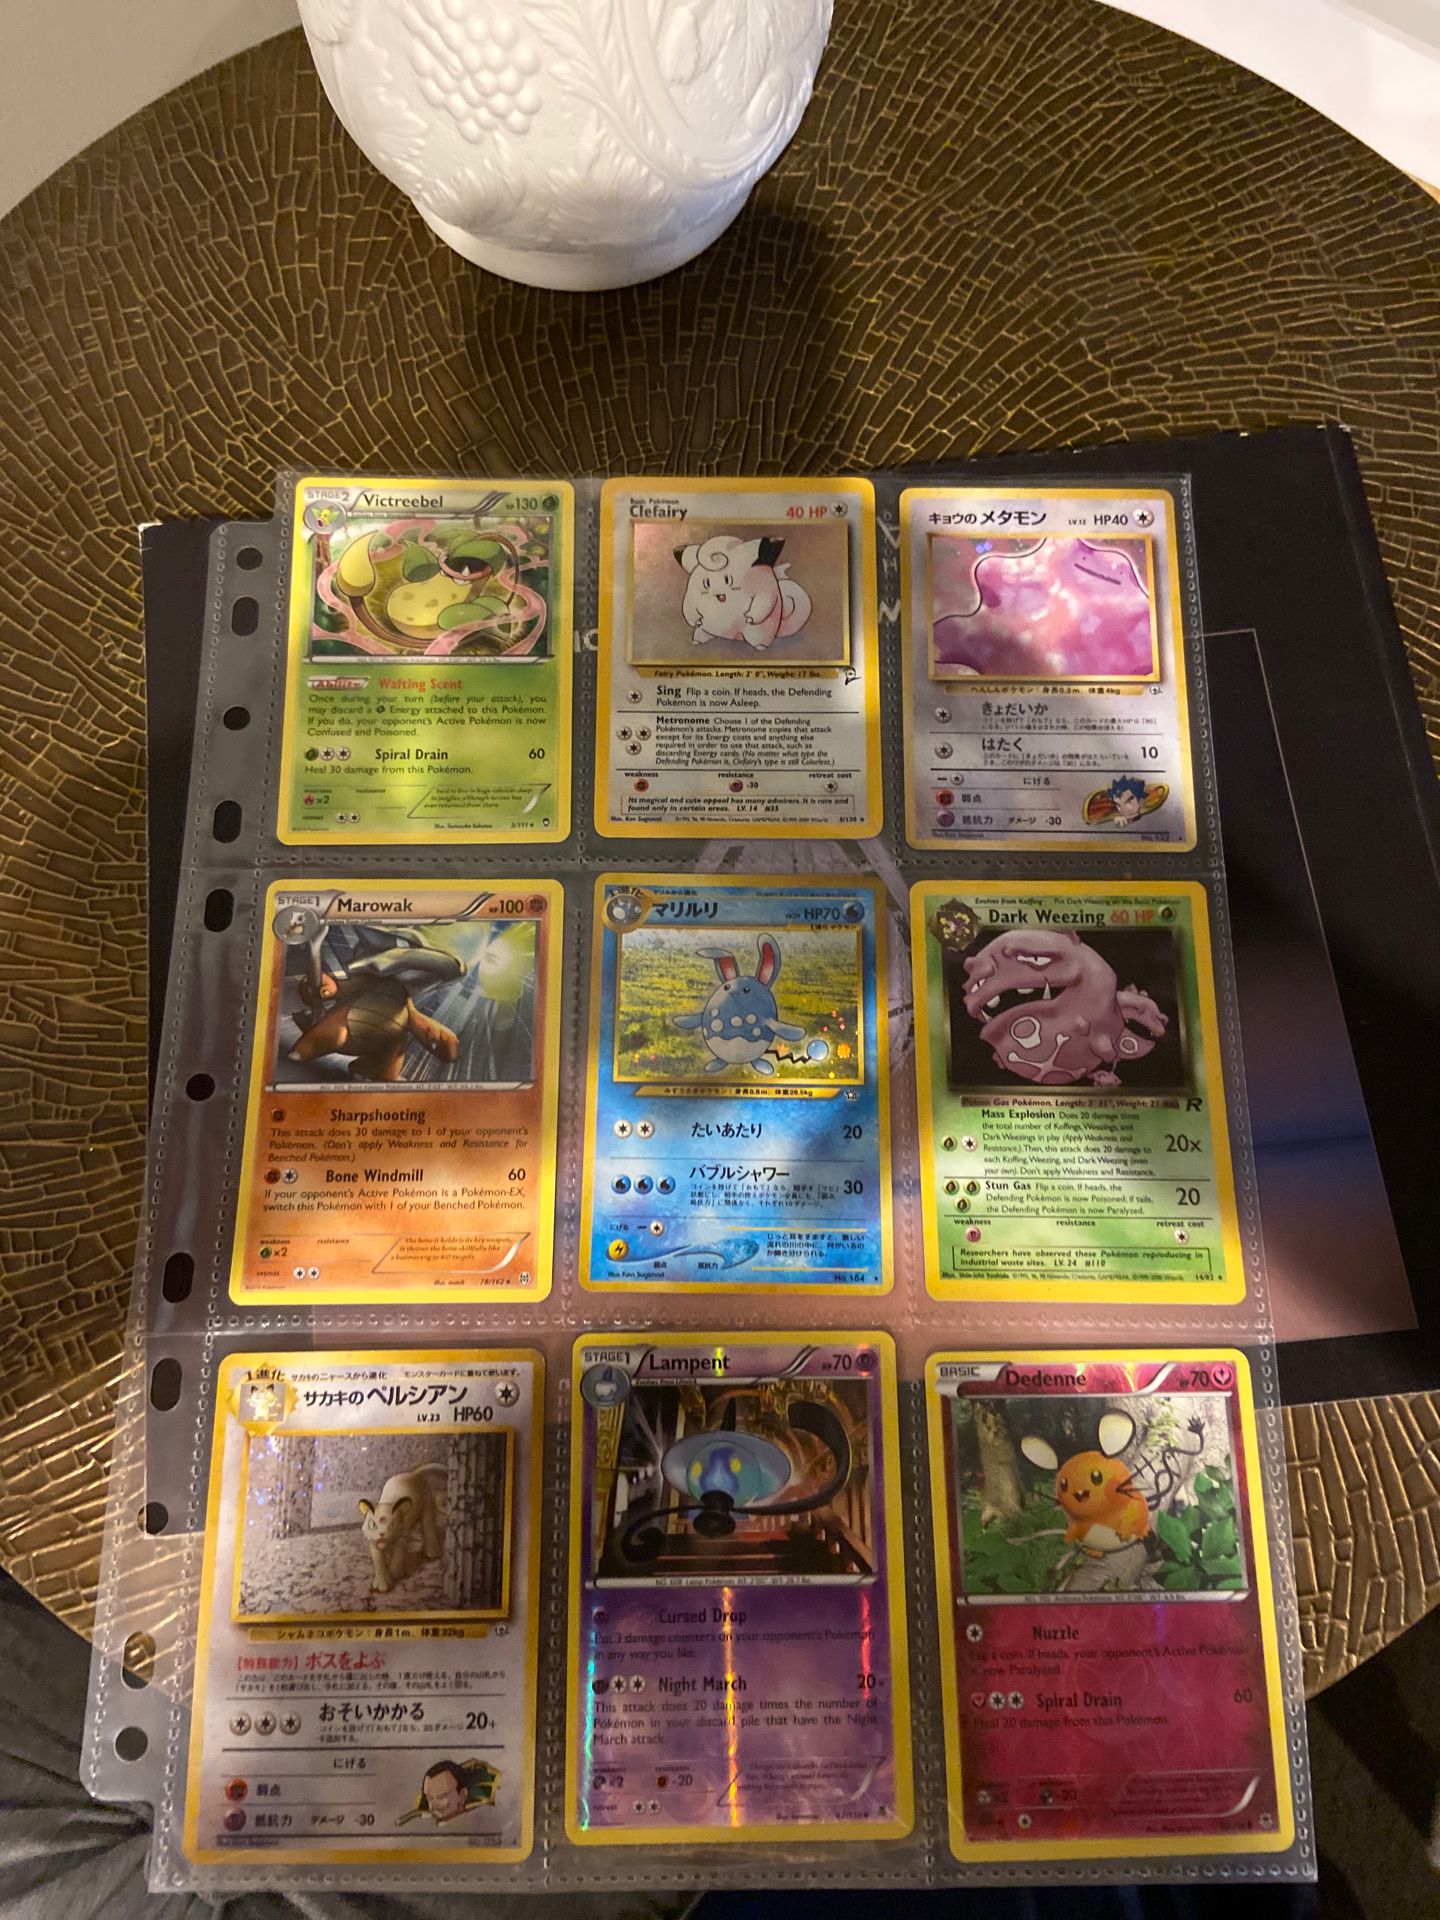 Random Pokémon cards